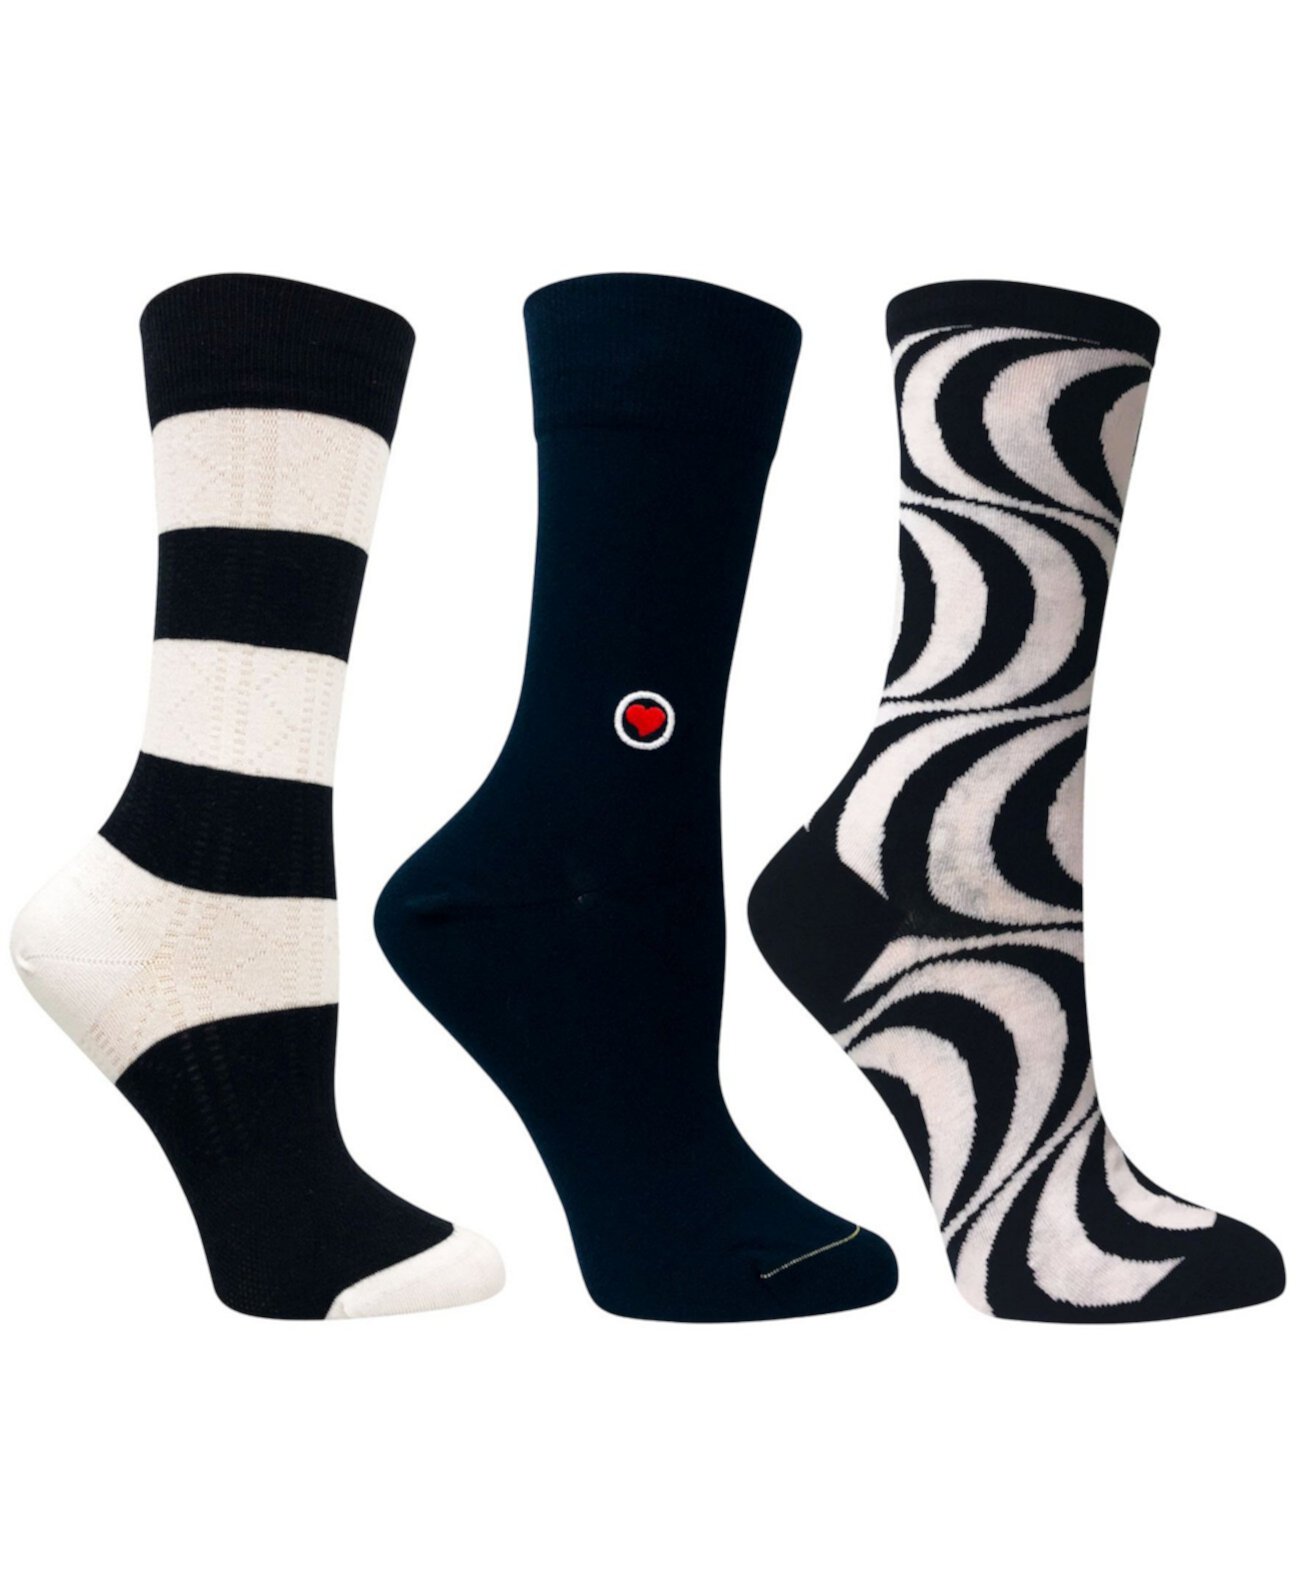 Носки женские в комплекте, 3 шт Love Sock Company